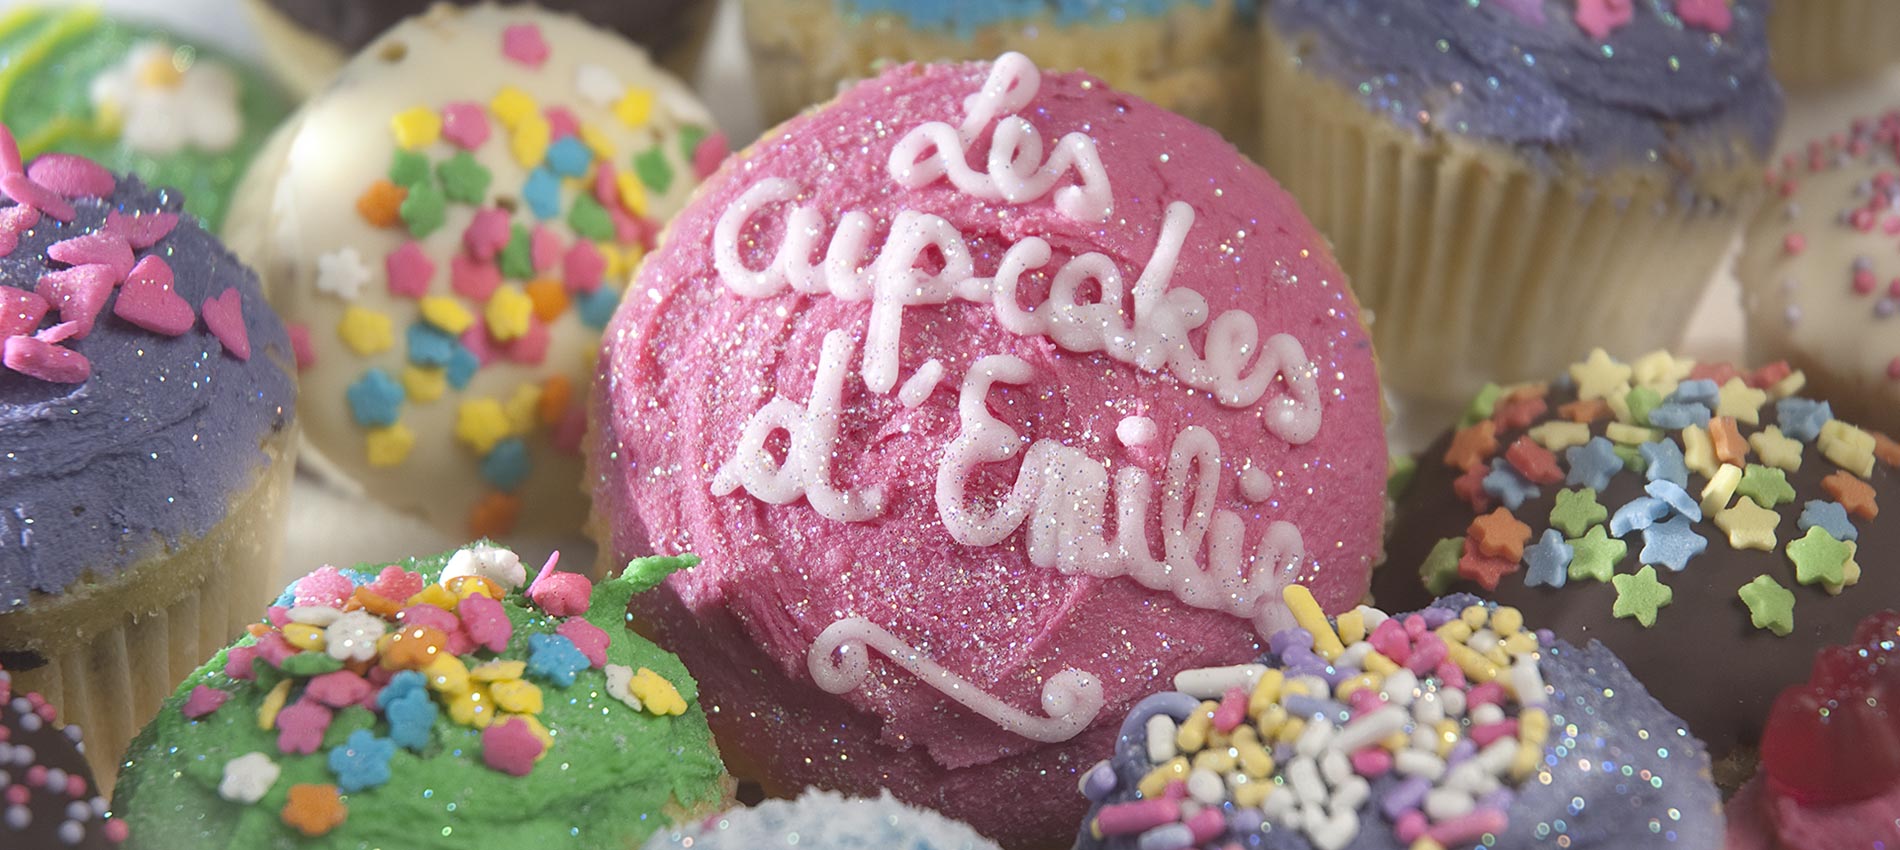 Dégustez nos cupcakes chez Filigranes &mdash; Les Cupcakes d'Emilie